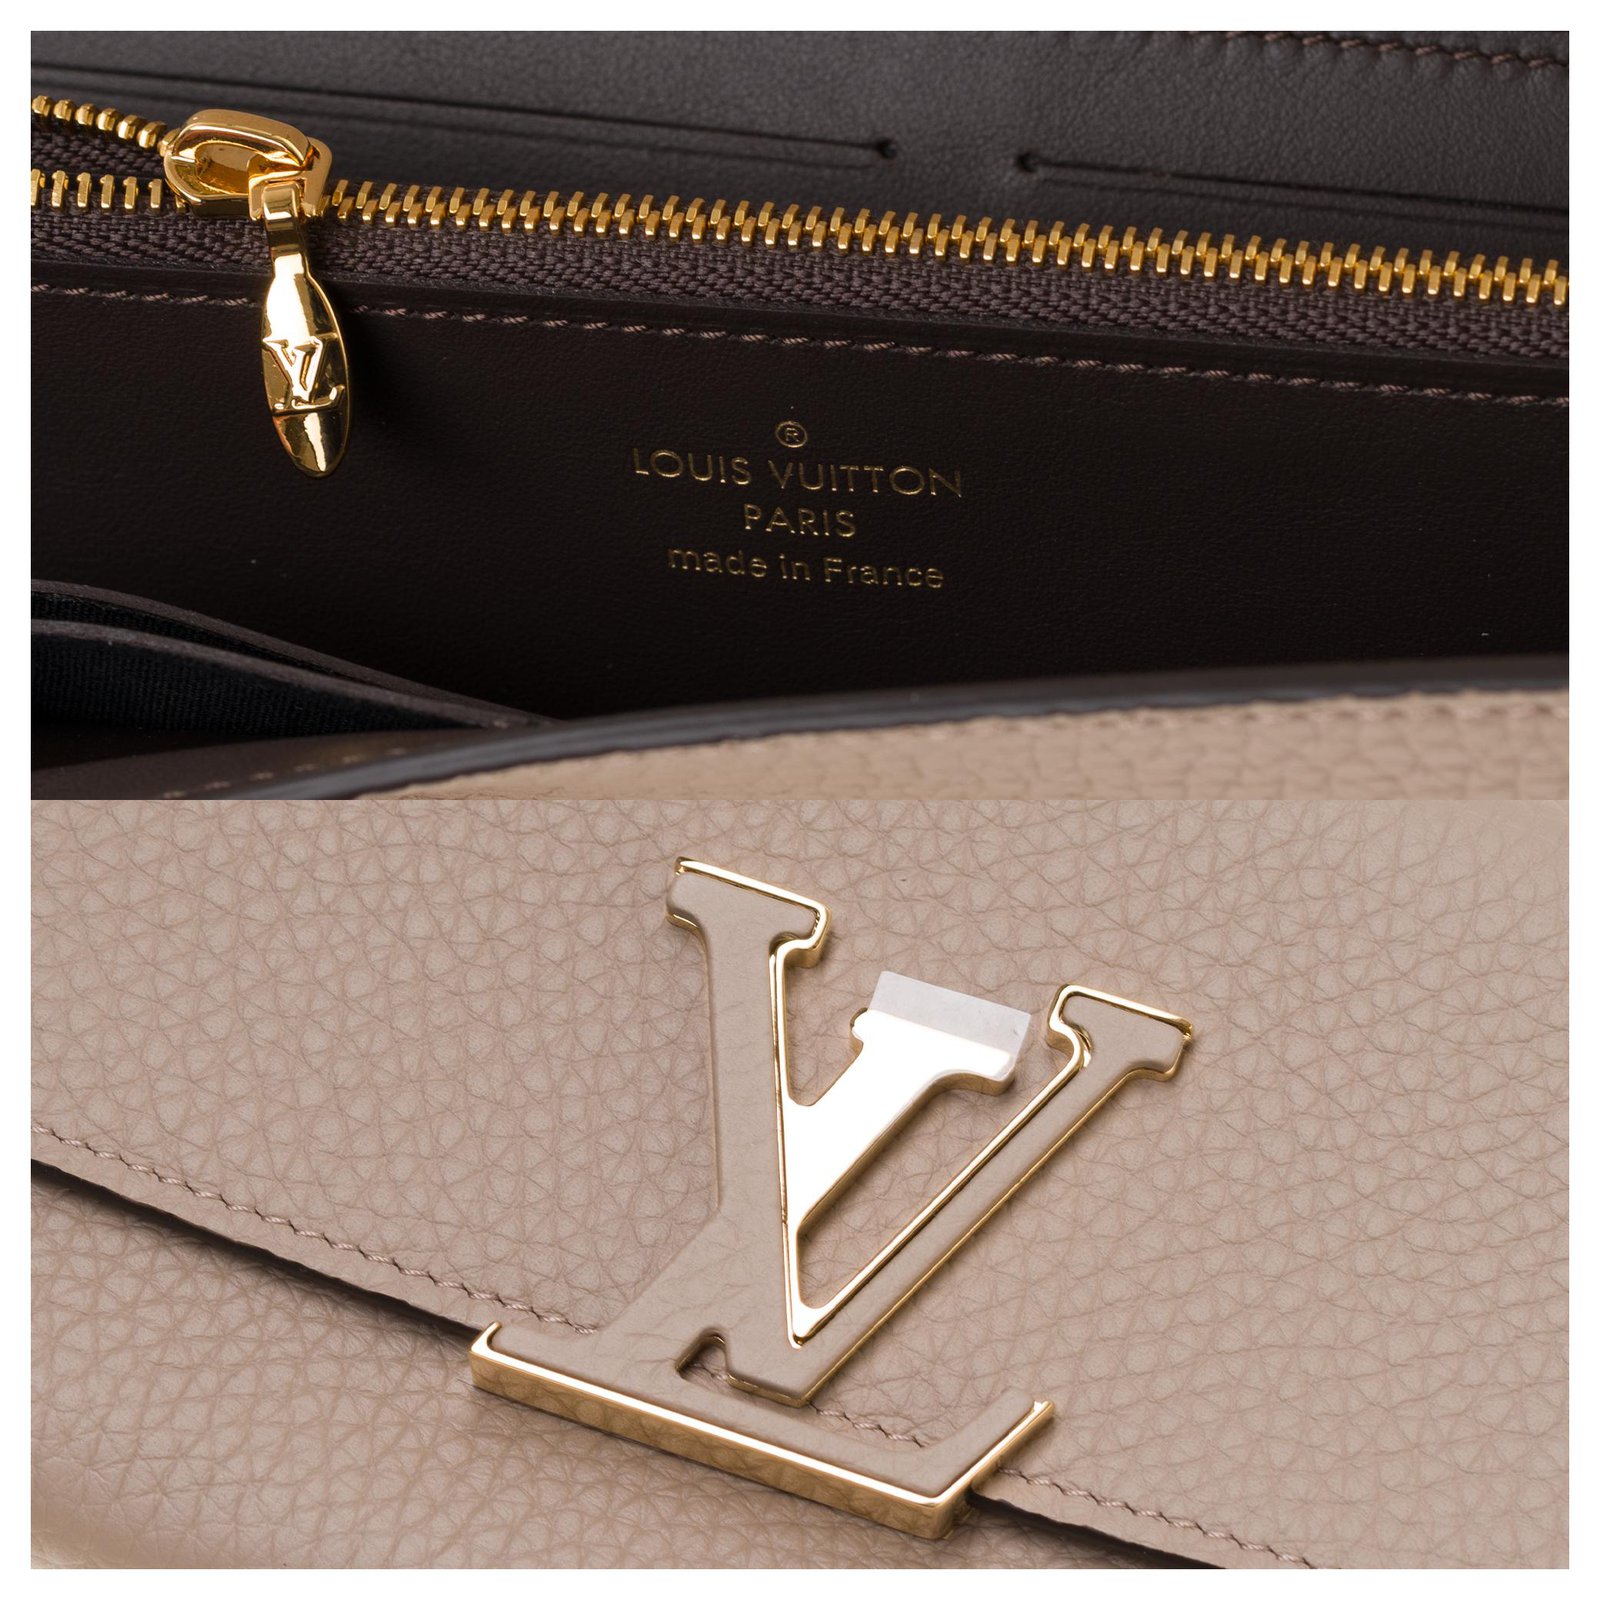 Authentic Louis Vuitton PEBBLE CAPUCINES Wallet, Taurillon Leather